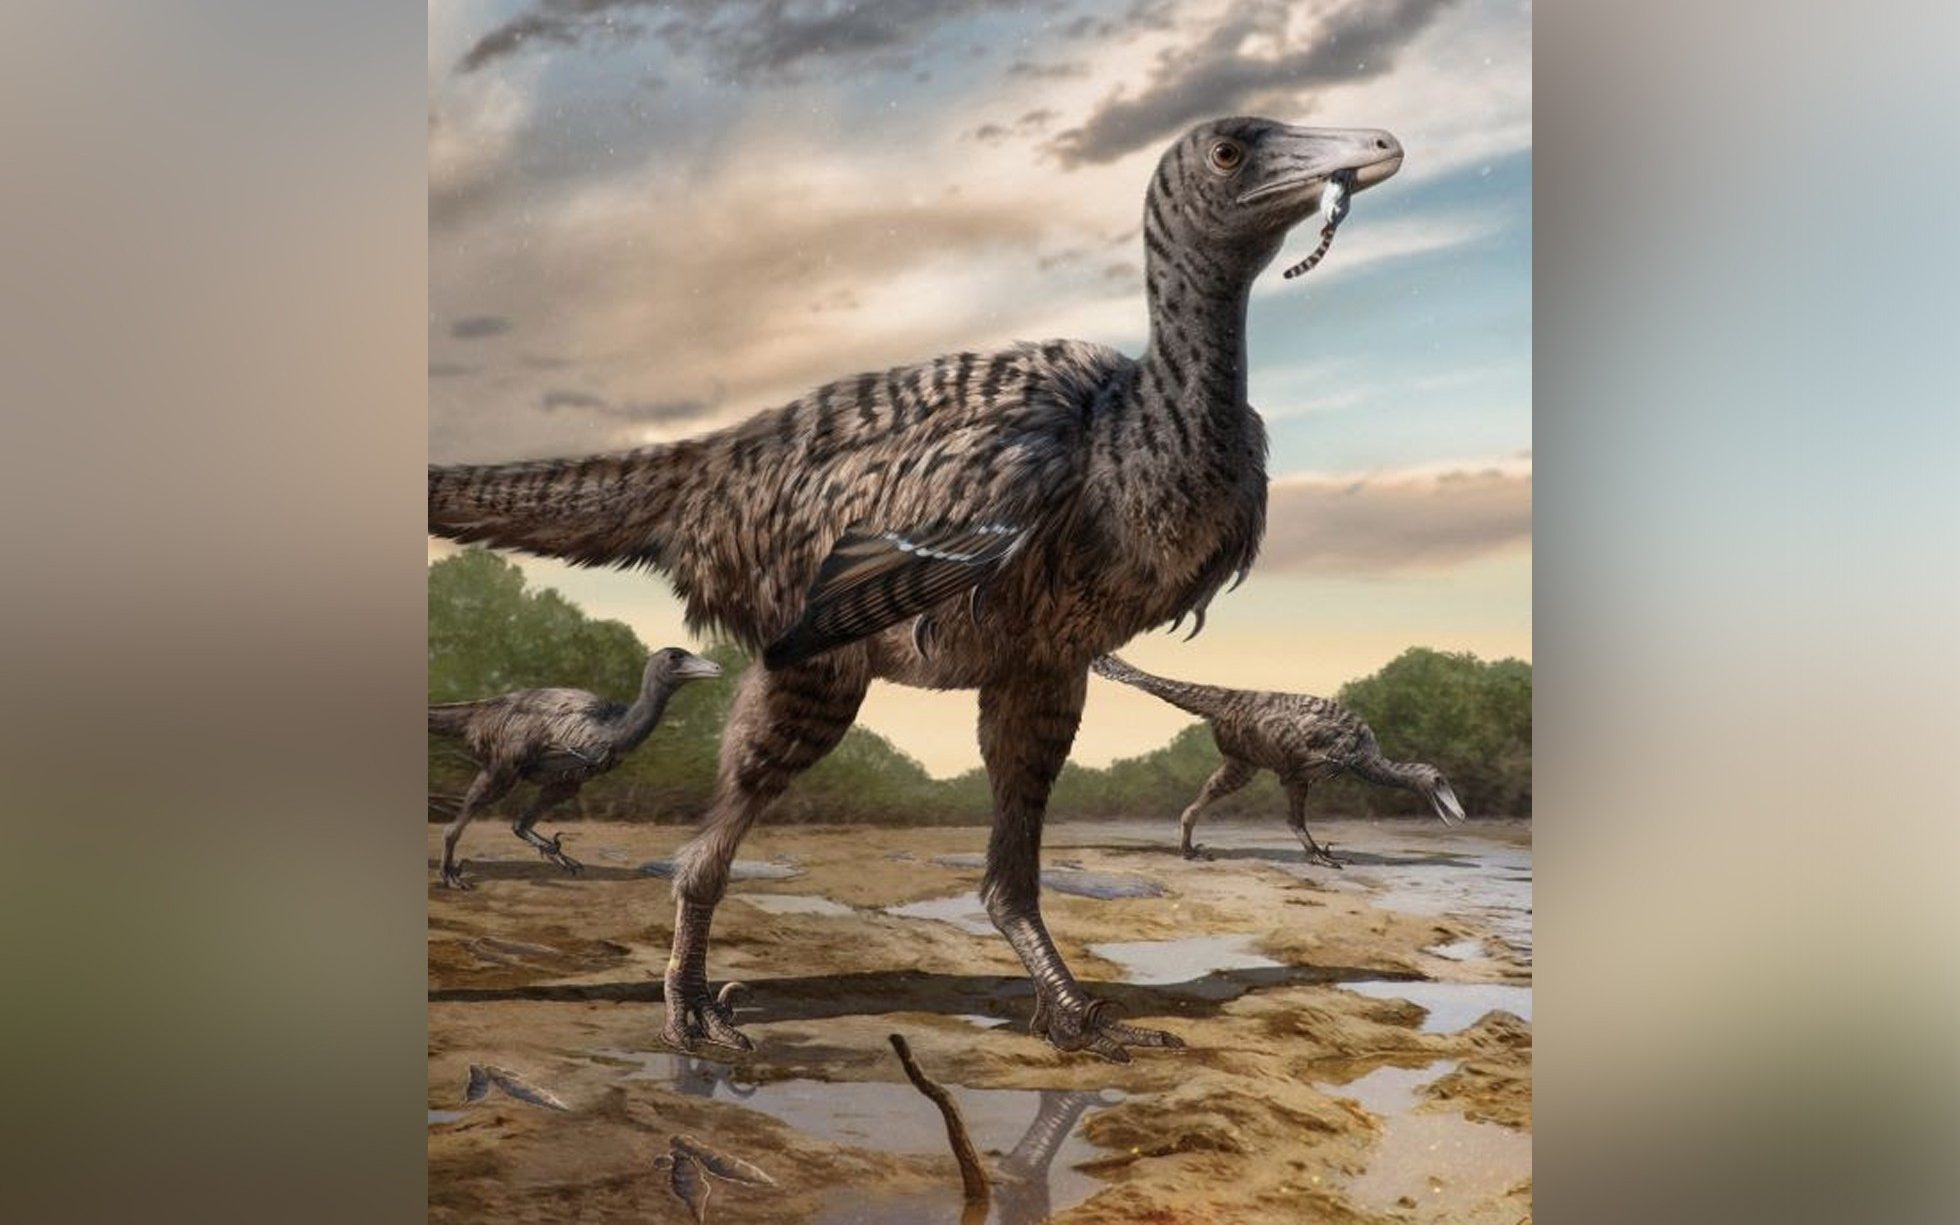 giant velociraptor bigger than jurassic park imaginings discovered